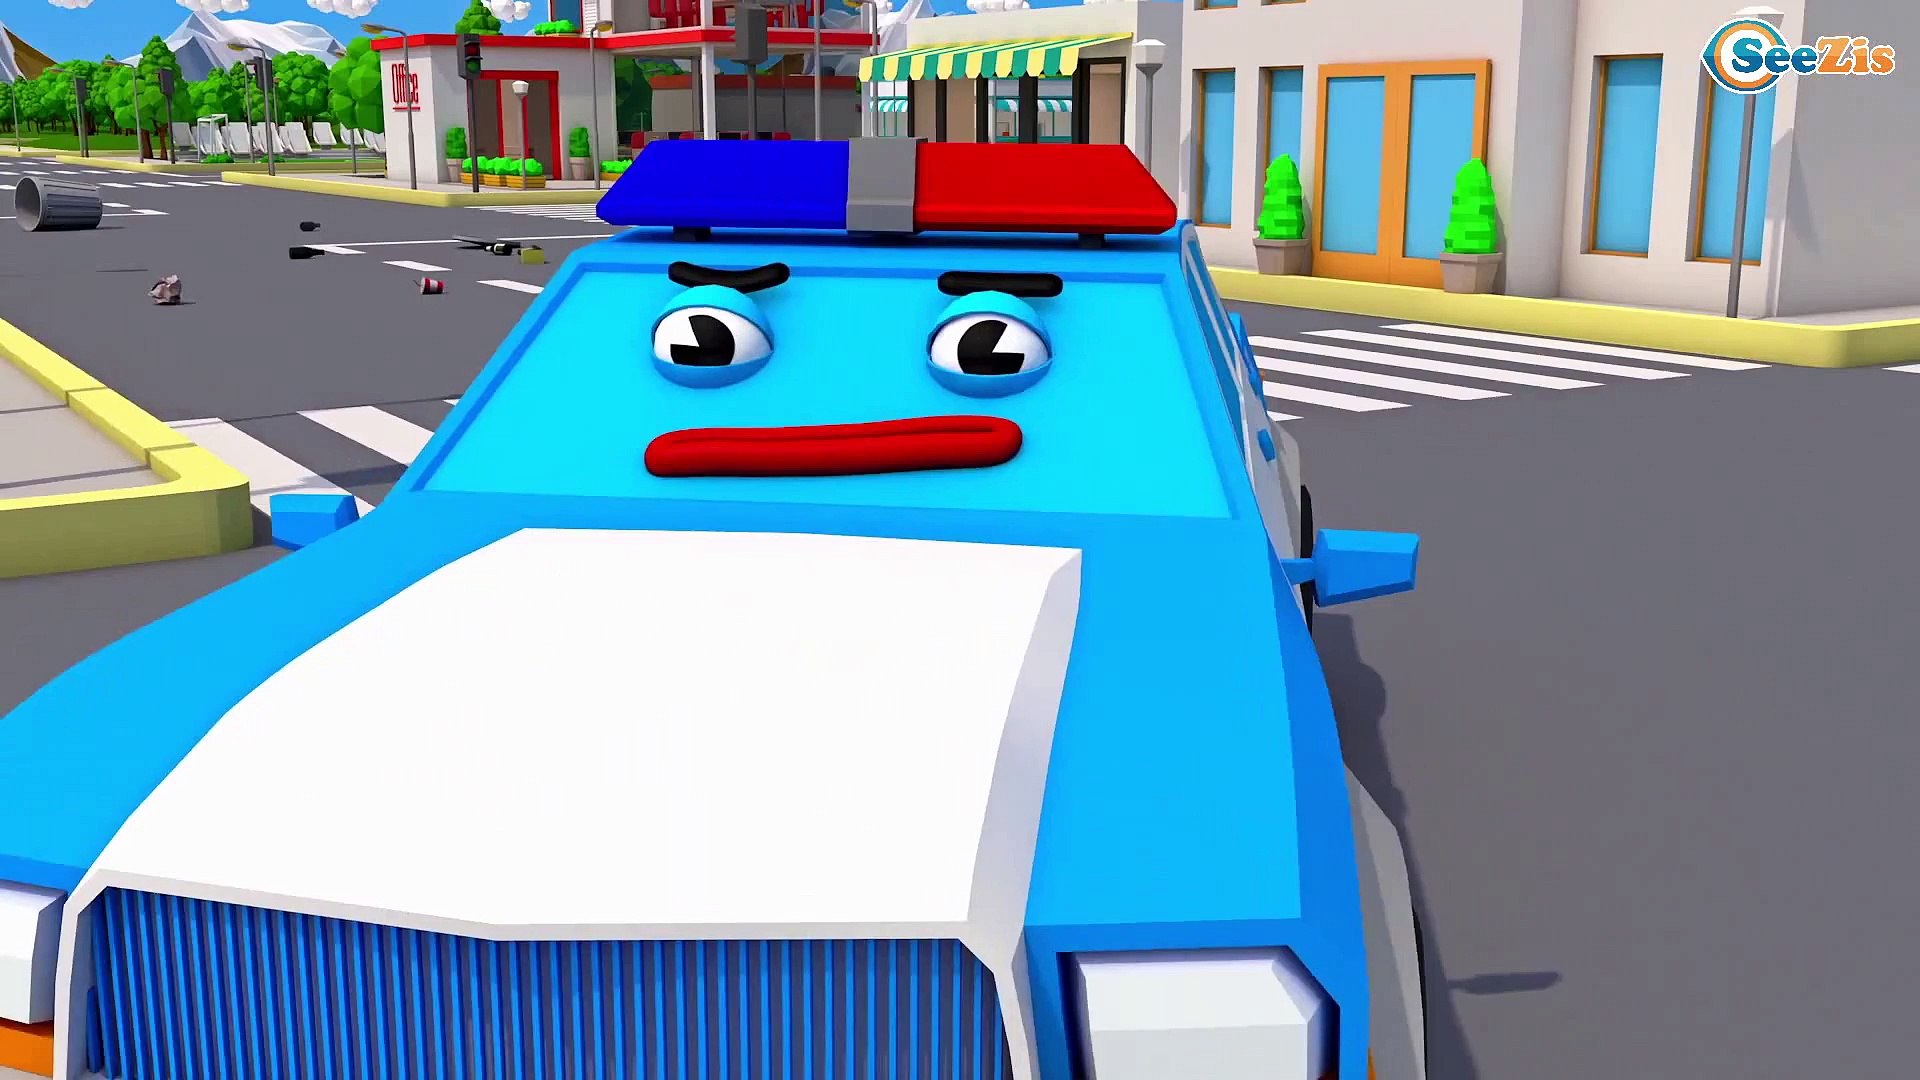 carro de polícia carros de brinquedo carros de corrida desenho